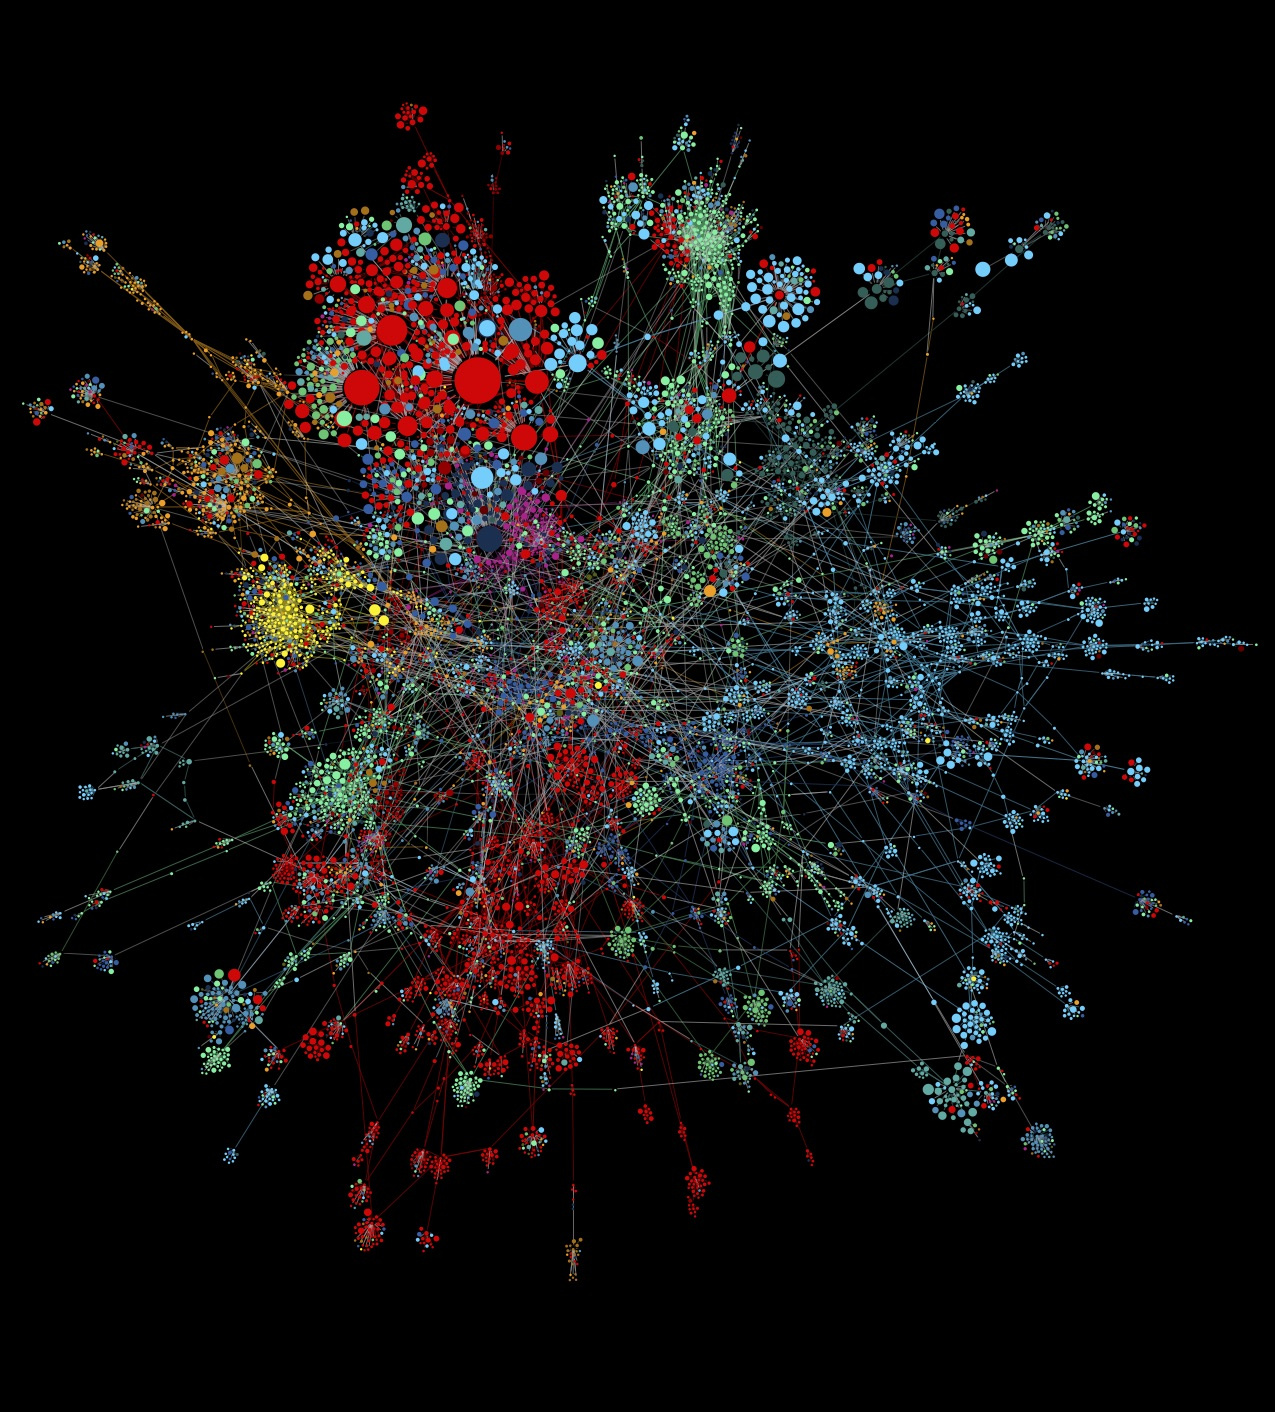 Zu sehen ist eine Visualisierung eines Netzwerkes. Das Netzwerk besteht aus mehreren, farblich gekennzeichneten Gruppierungen.